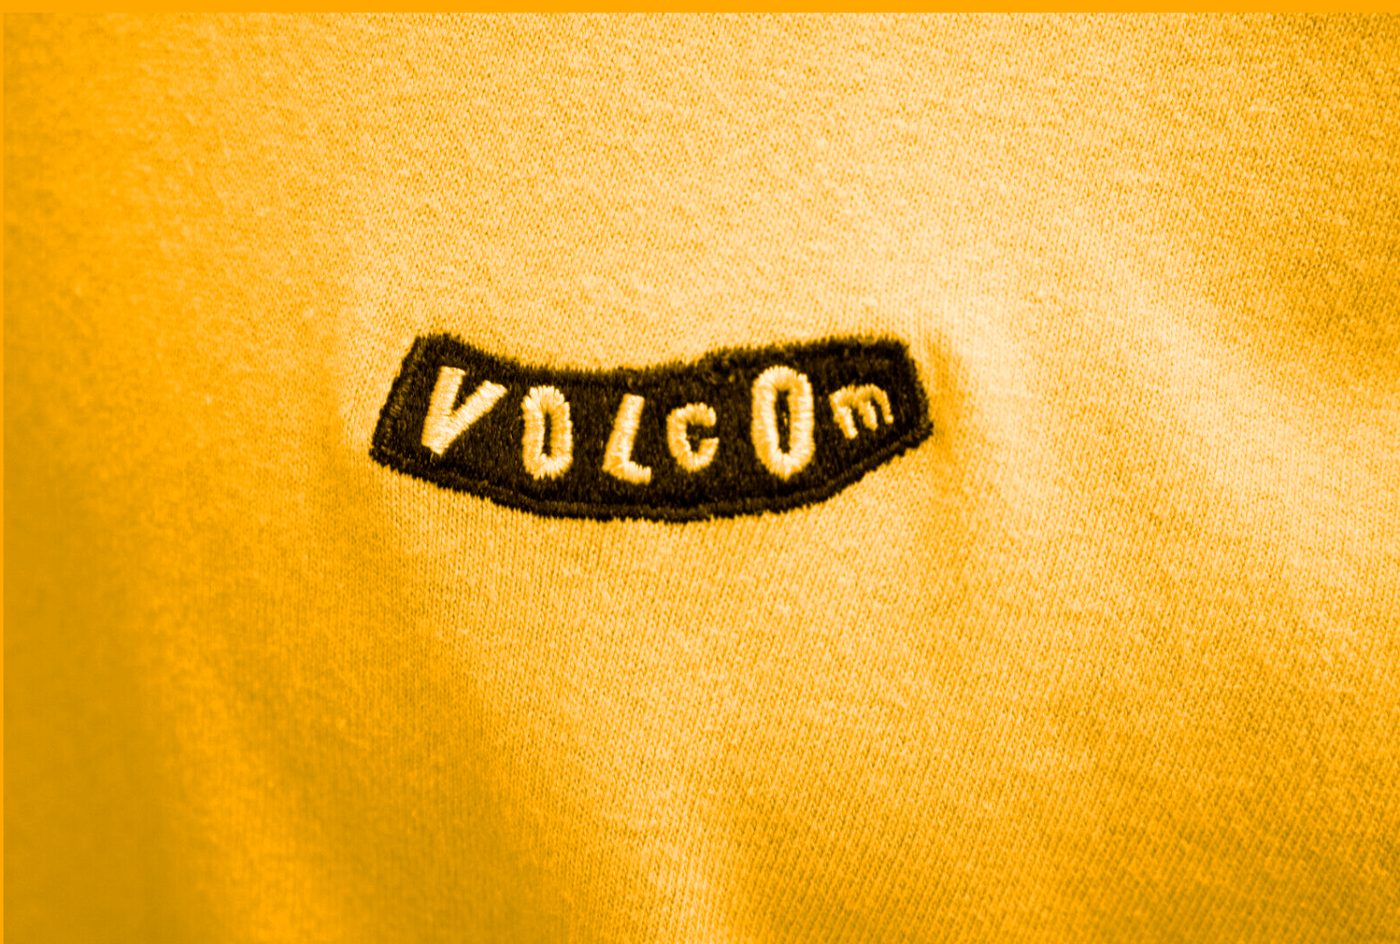 Volcom Men's Gold Pistol Blanks BXY S/S T-Shirt (S18)